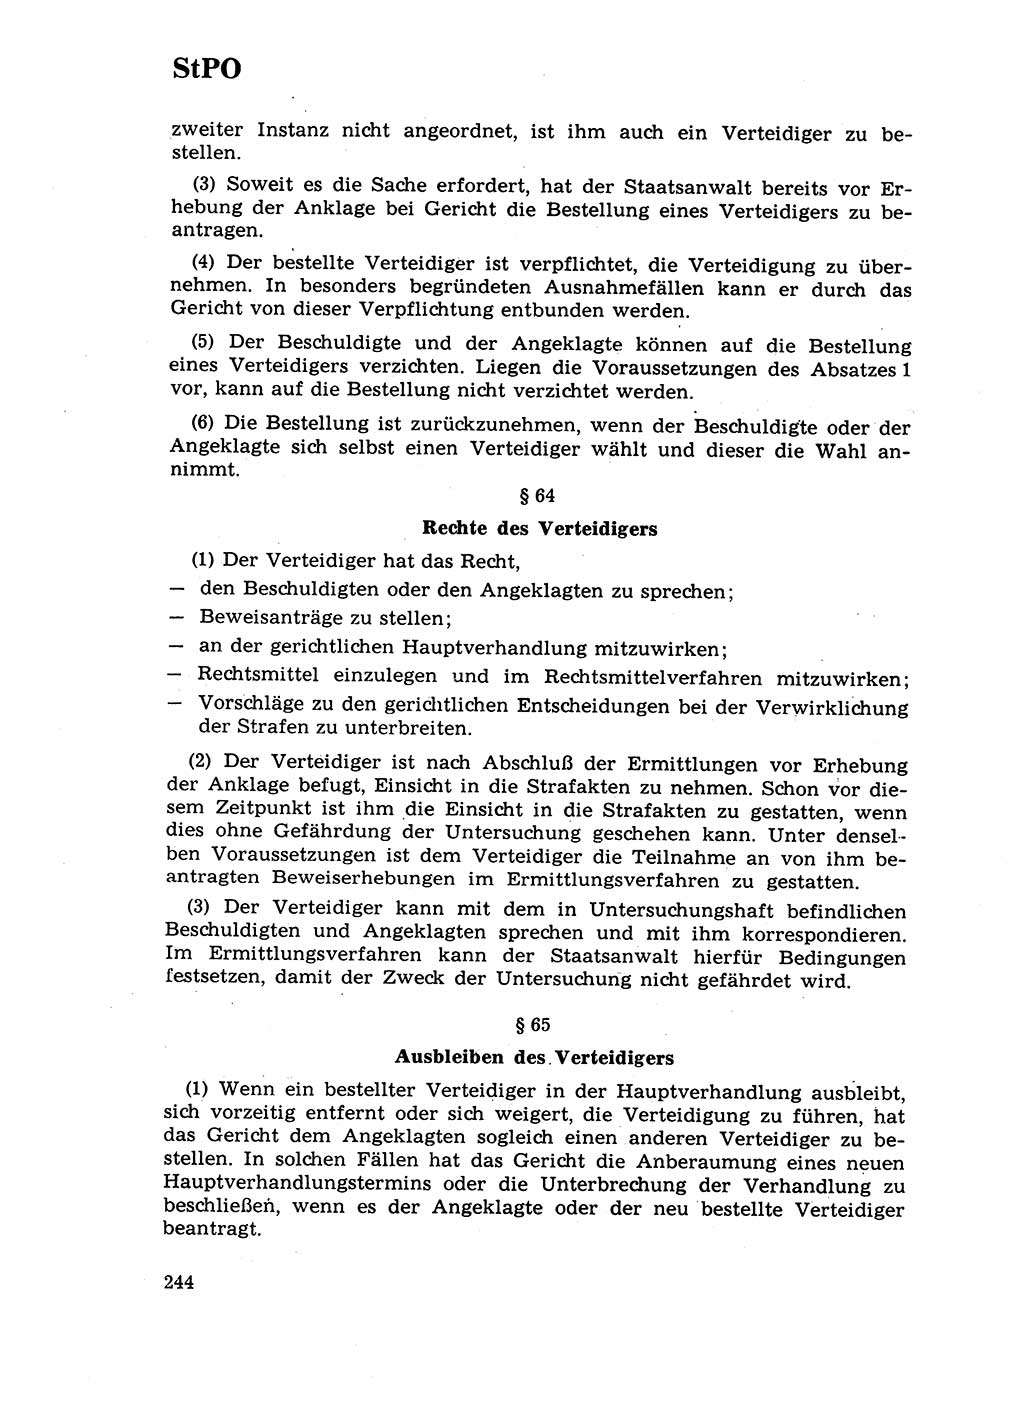 Strafrecht [Deutsche Demokratische Republik (DDR)] 1968, Seite 244 (Strafr. DDR 1968, S. 244)